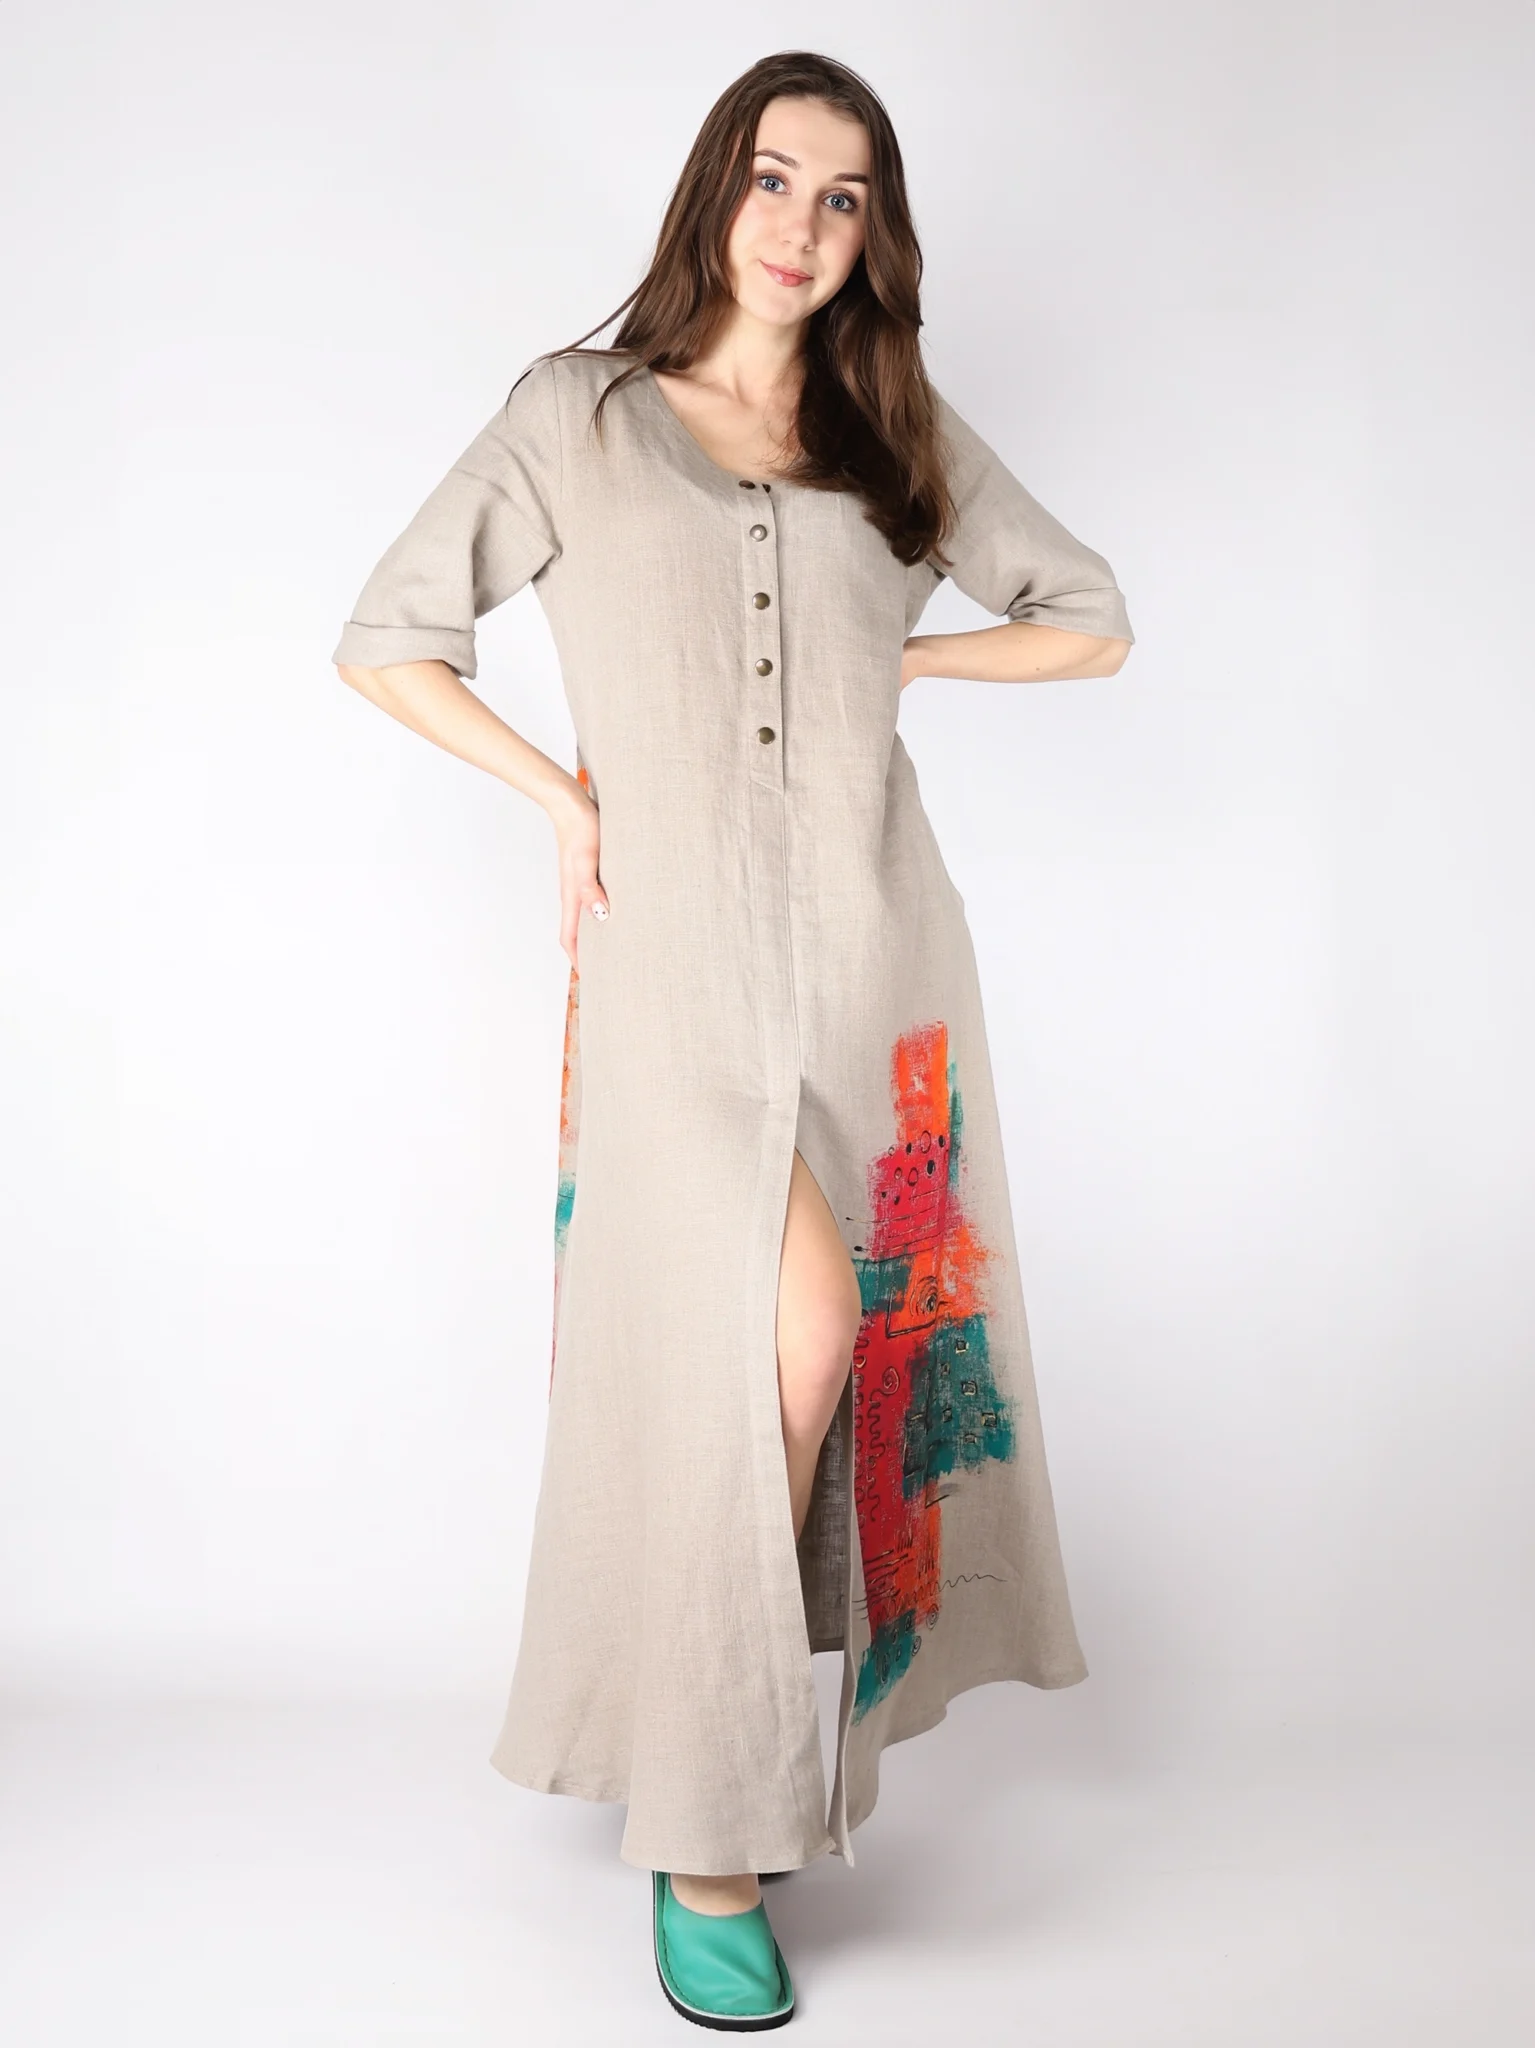 Lniana sukienka maxi z rozpinanym na guziki dekoltem, w kolorze naturalnego lnu, malowana ręcznie.